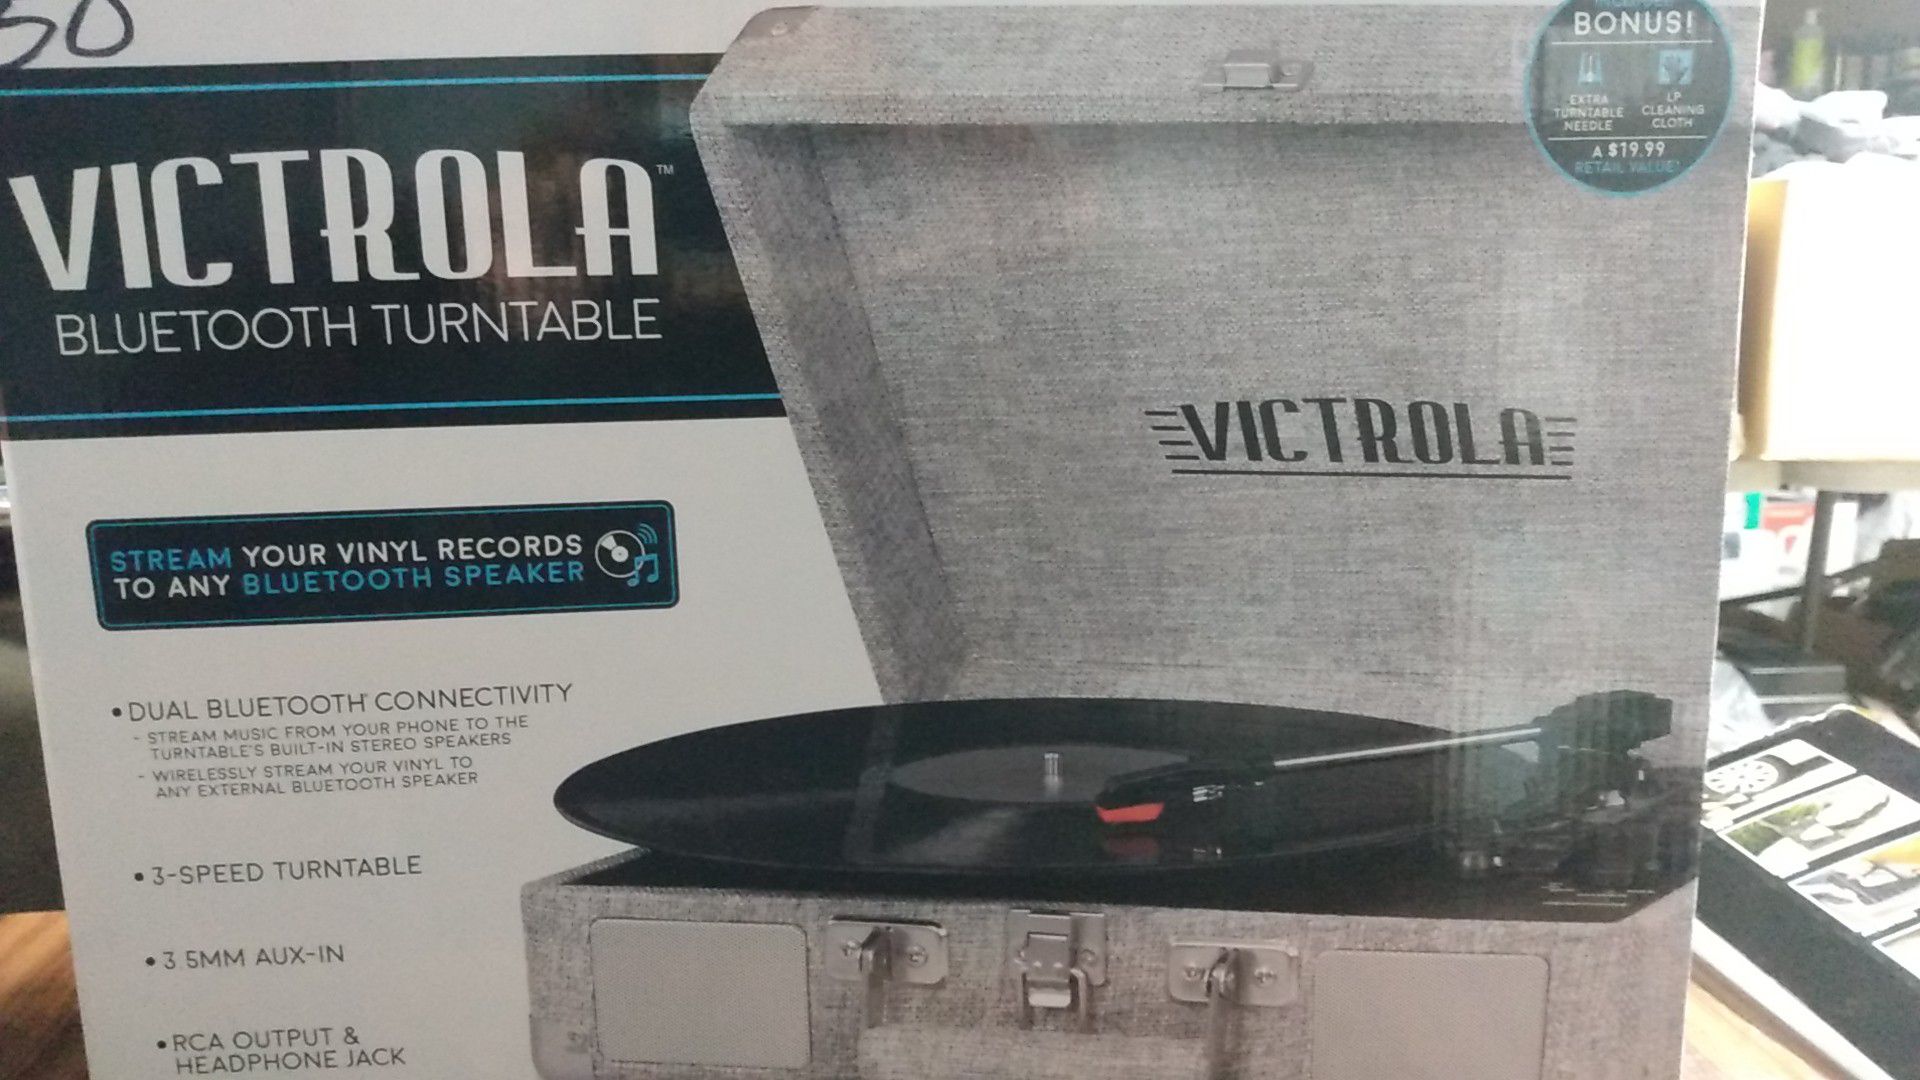 Victrola bluetooth turntable (new)